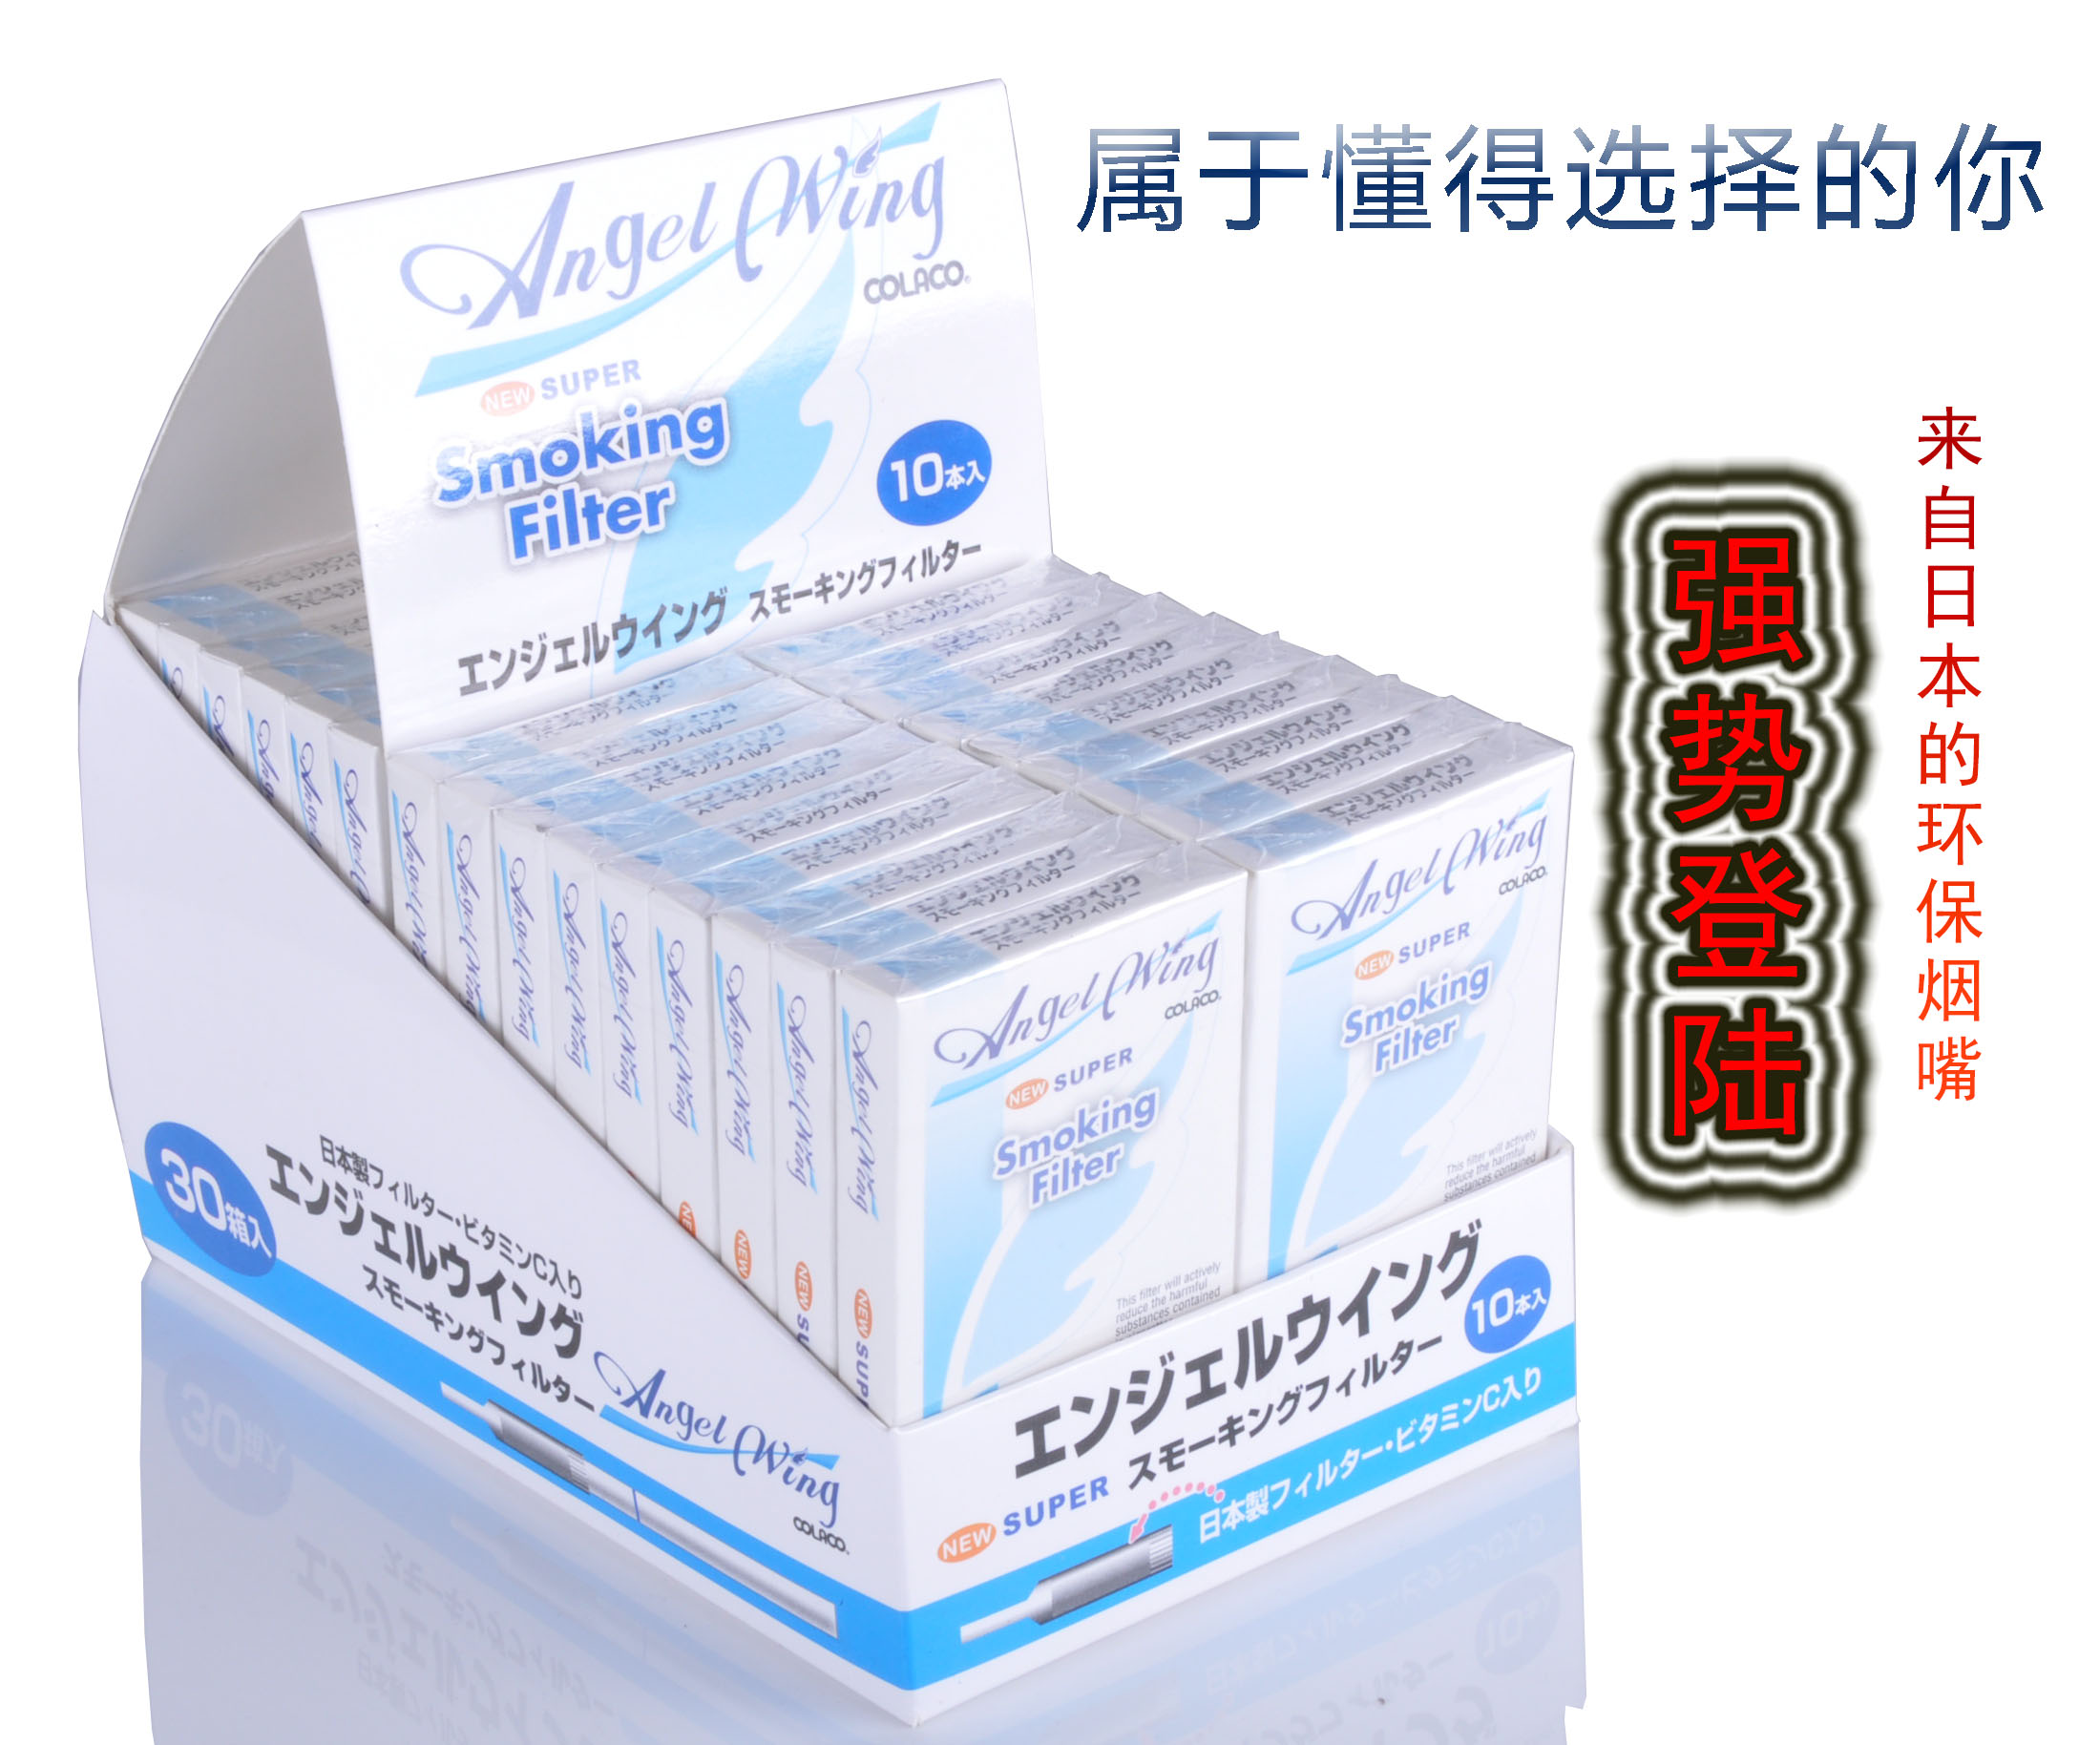 原装进口AngelWing正品日本天使烟嘴过滤器正品一次性抛弃烟嘴